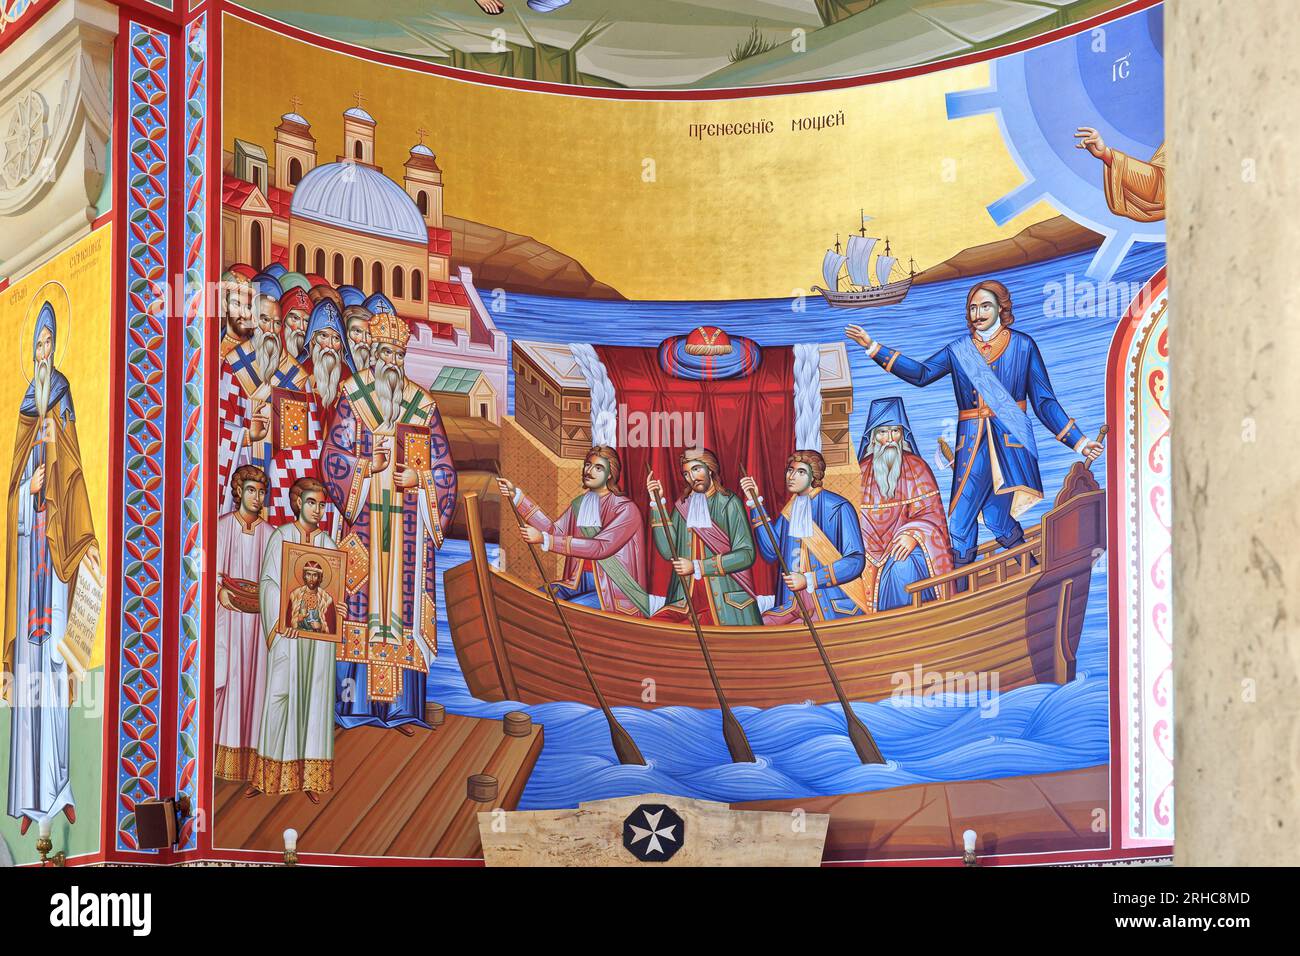 Un murale raffigurante Pietro il grande nella chiesa ortodossa serba di Sant'Alessandro Nevskij a Belgrado, Serbia Foto Stock